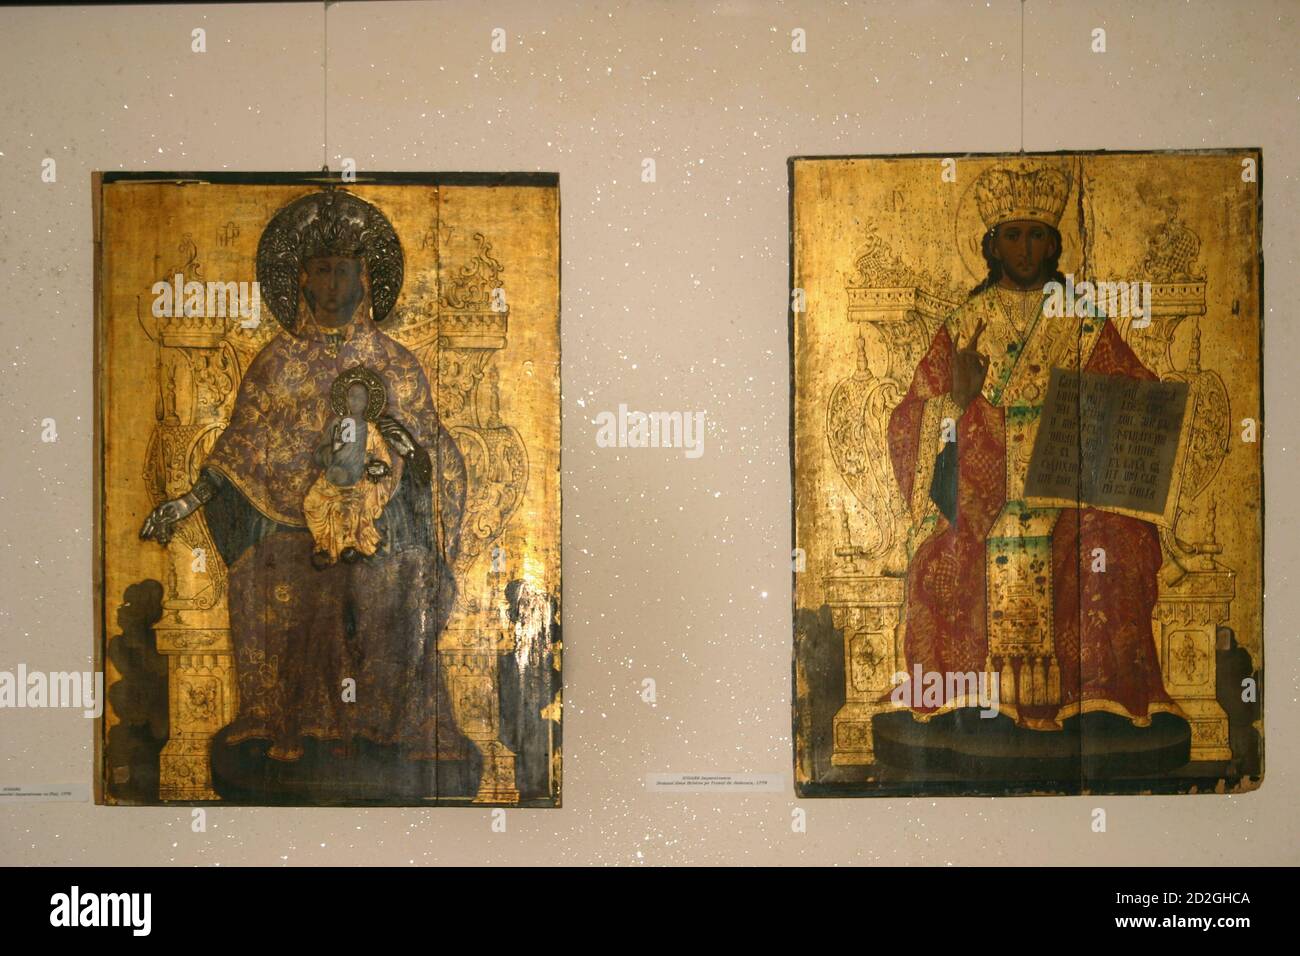 Das Museum für religiöse Kunst in Maia, Rumänien. Byzantinische Ikonen des 18. Jahrhunderts, die die Theotokos als Königin und Christus auf dem Gerichtsthron darstellen. Stockfoto